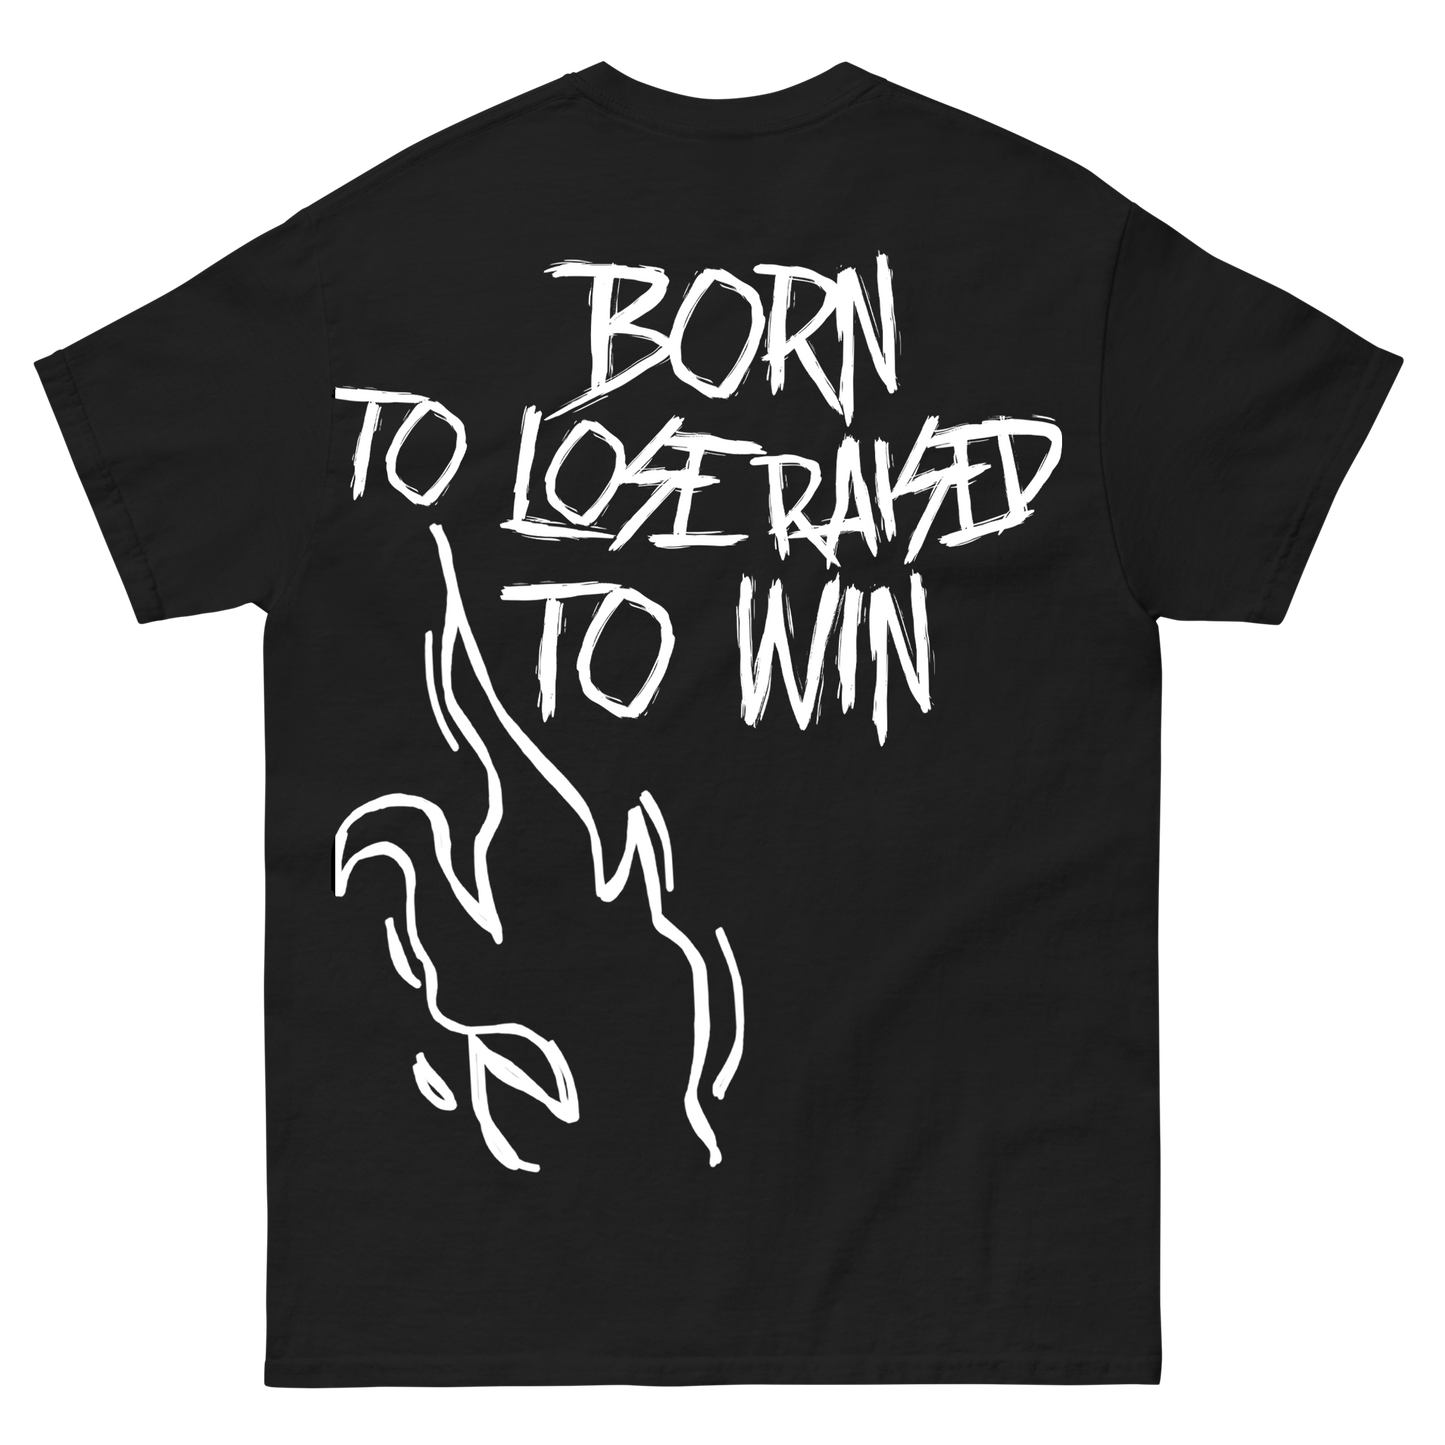 "Raised to Win" T-Shirt